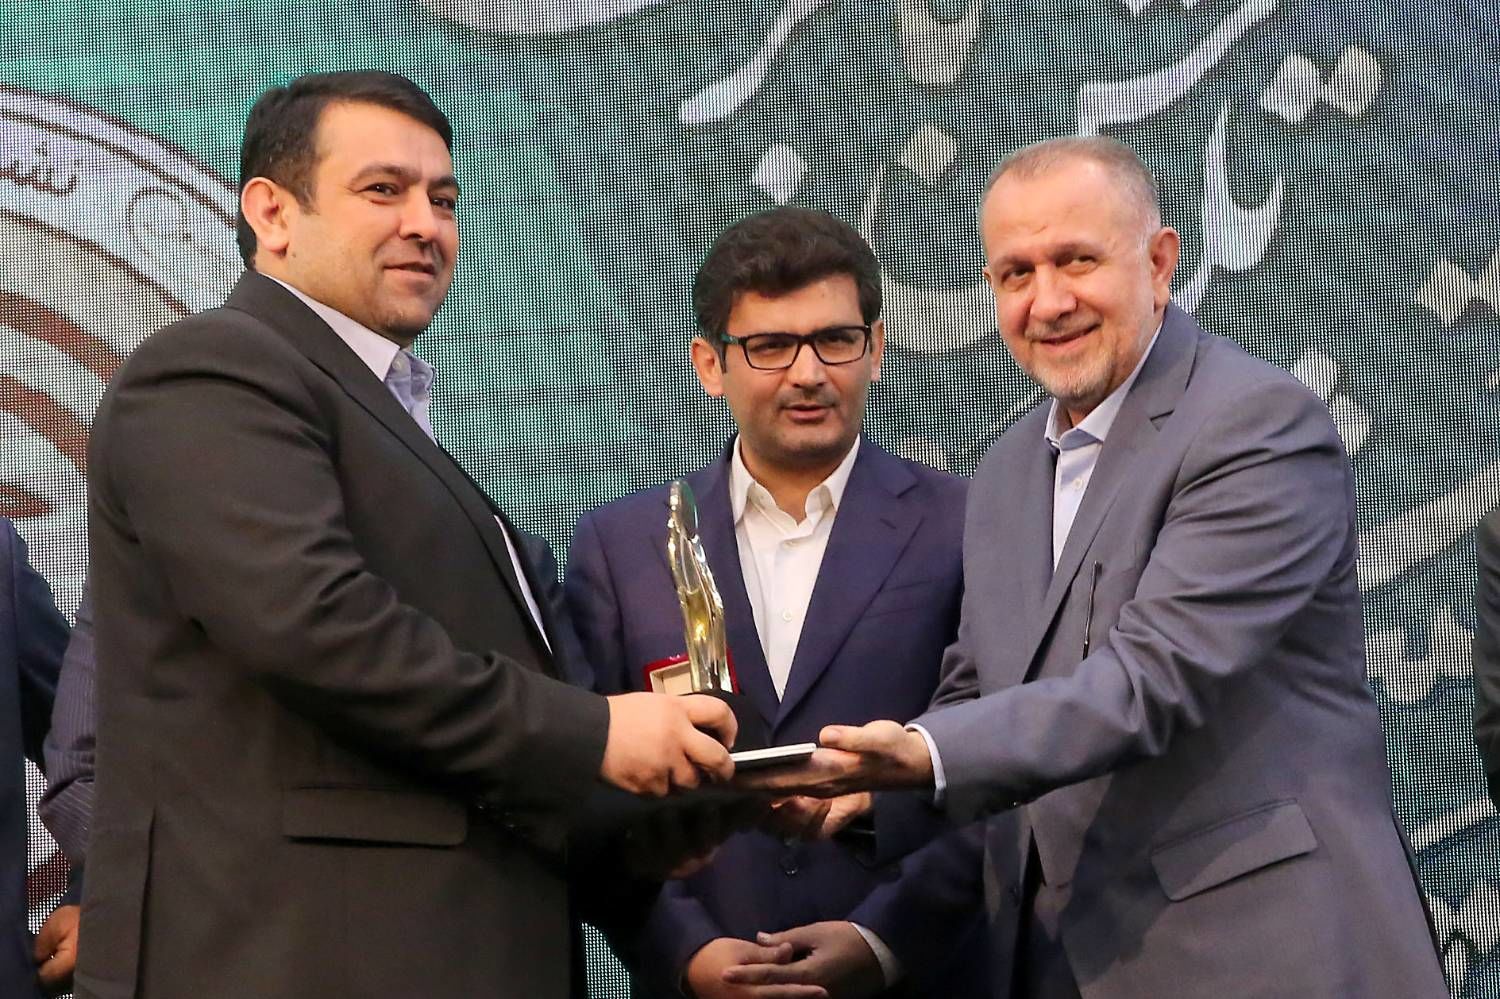 قدردانی بنیاد برکت از عملکرد بانک ملی ایران در ایجاد فرصت های شغلی در کشور